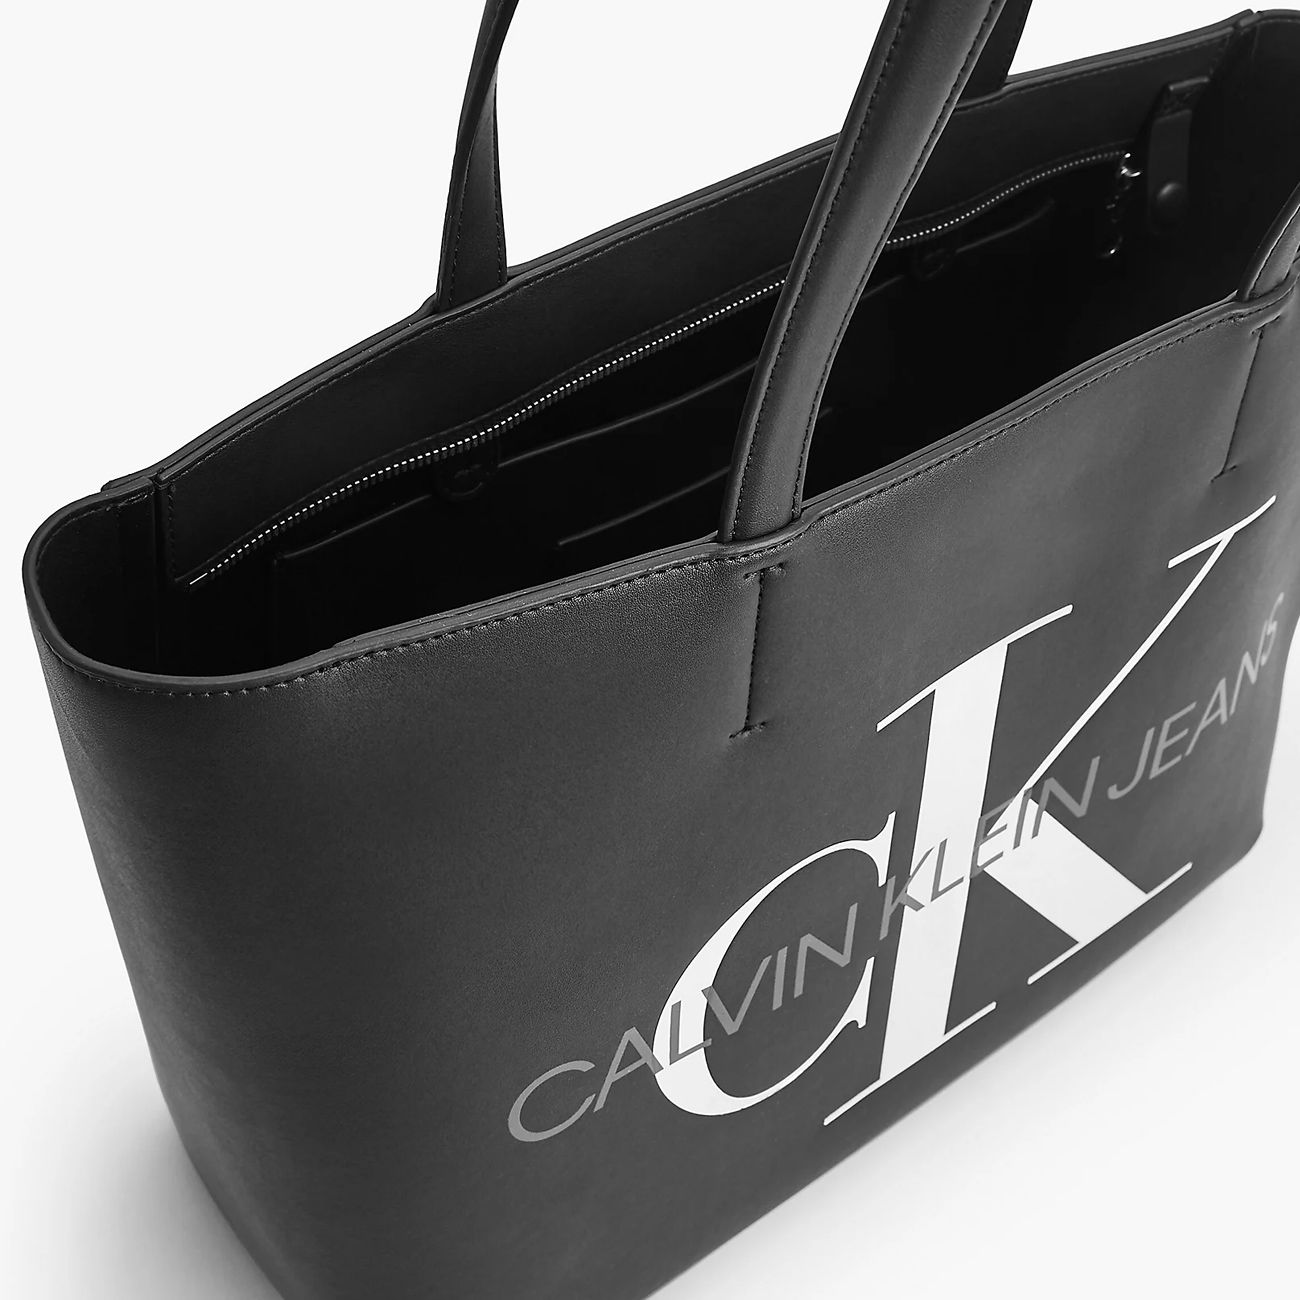 Calvin Klein Logo Purse Bag